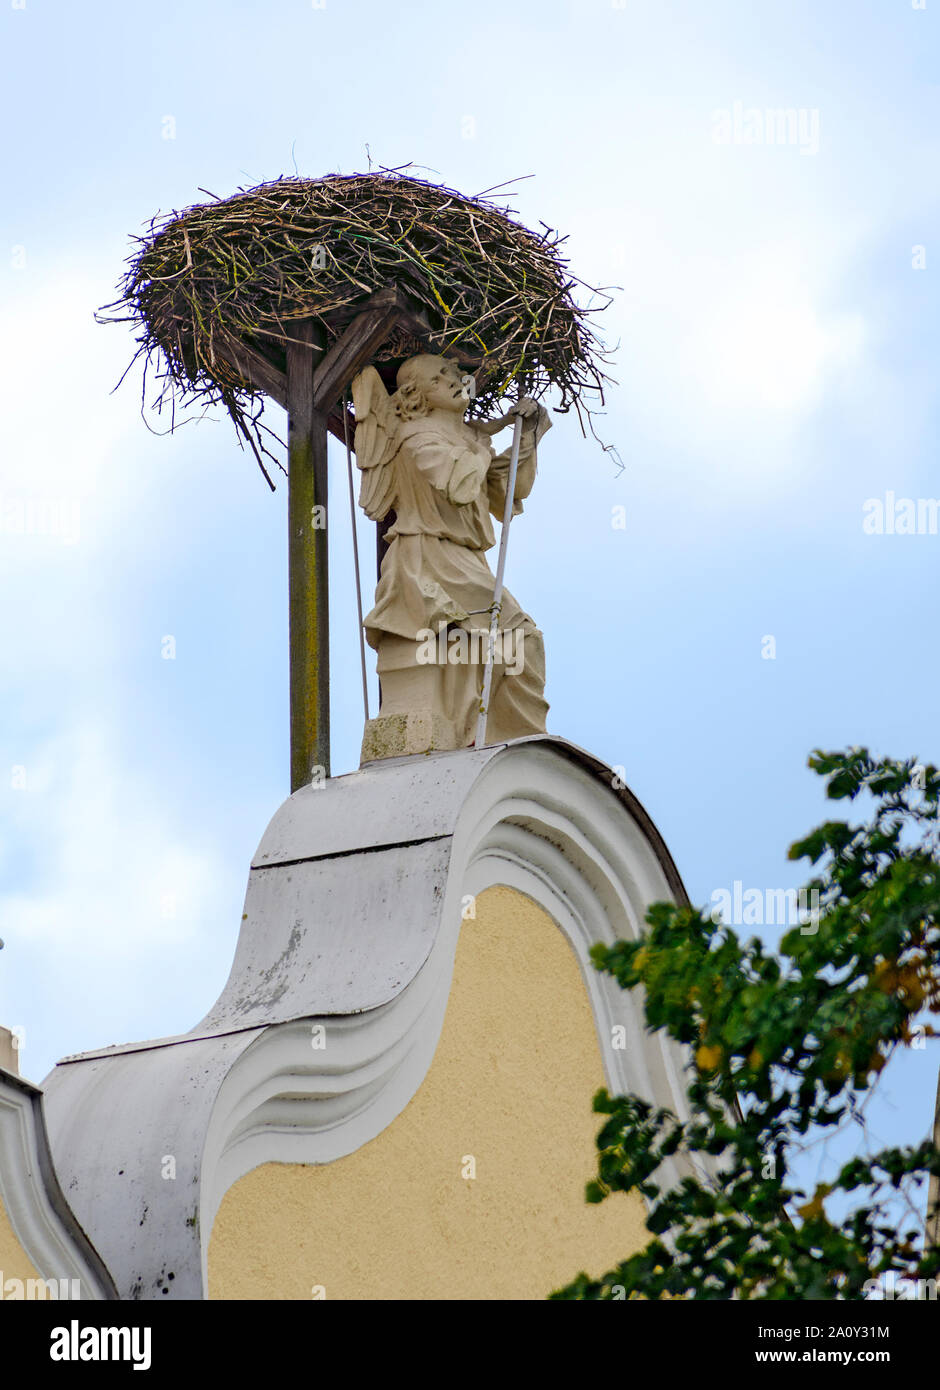 La figure d'un ange avec stork nest Banque D'Images